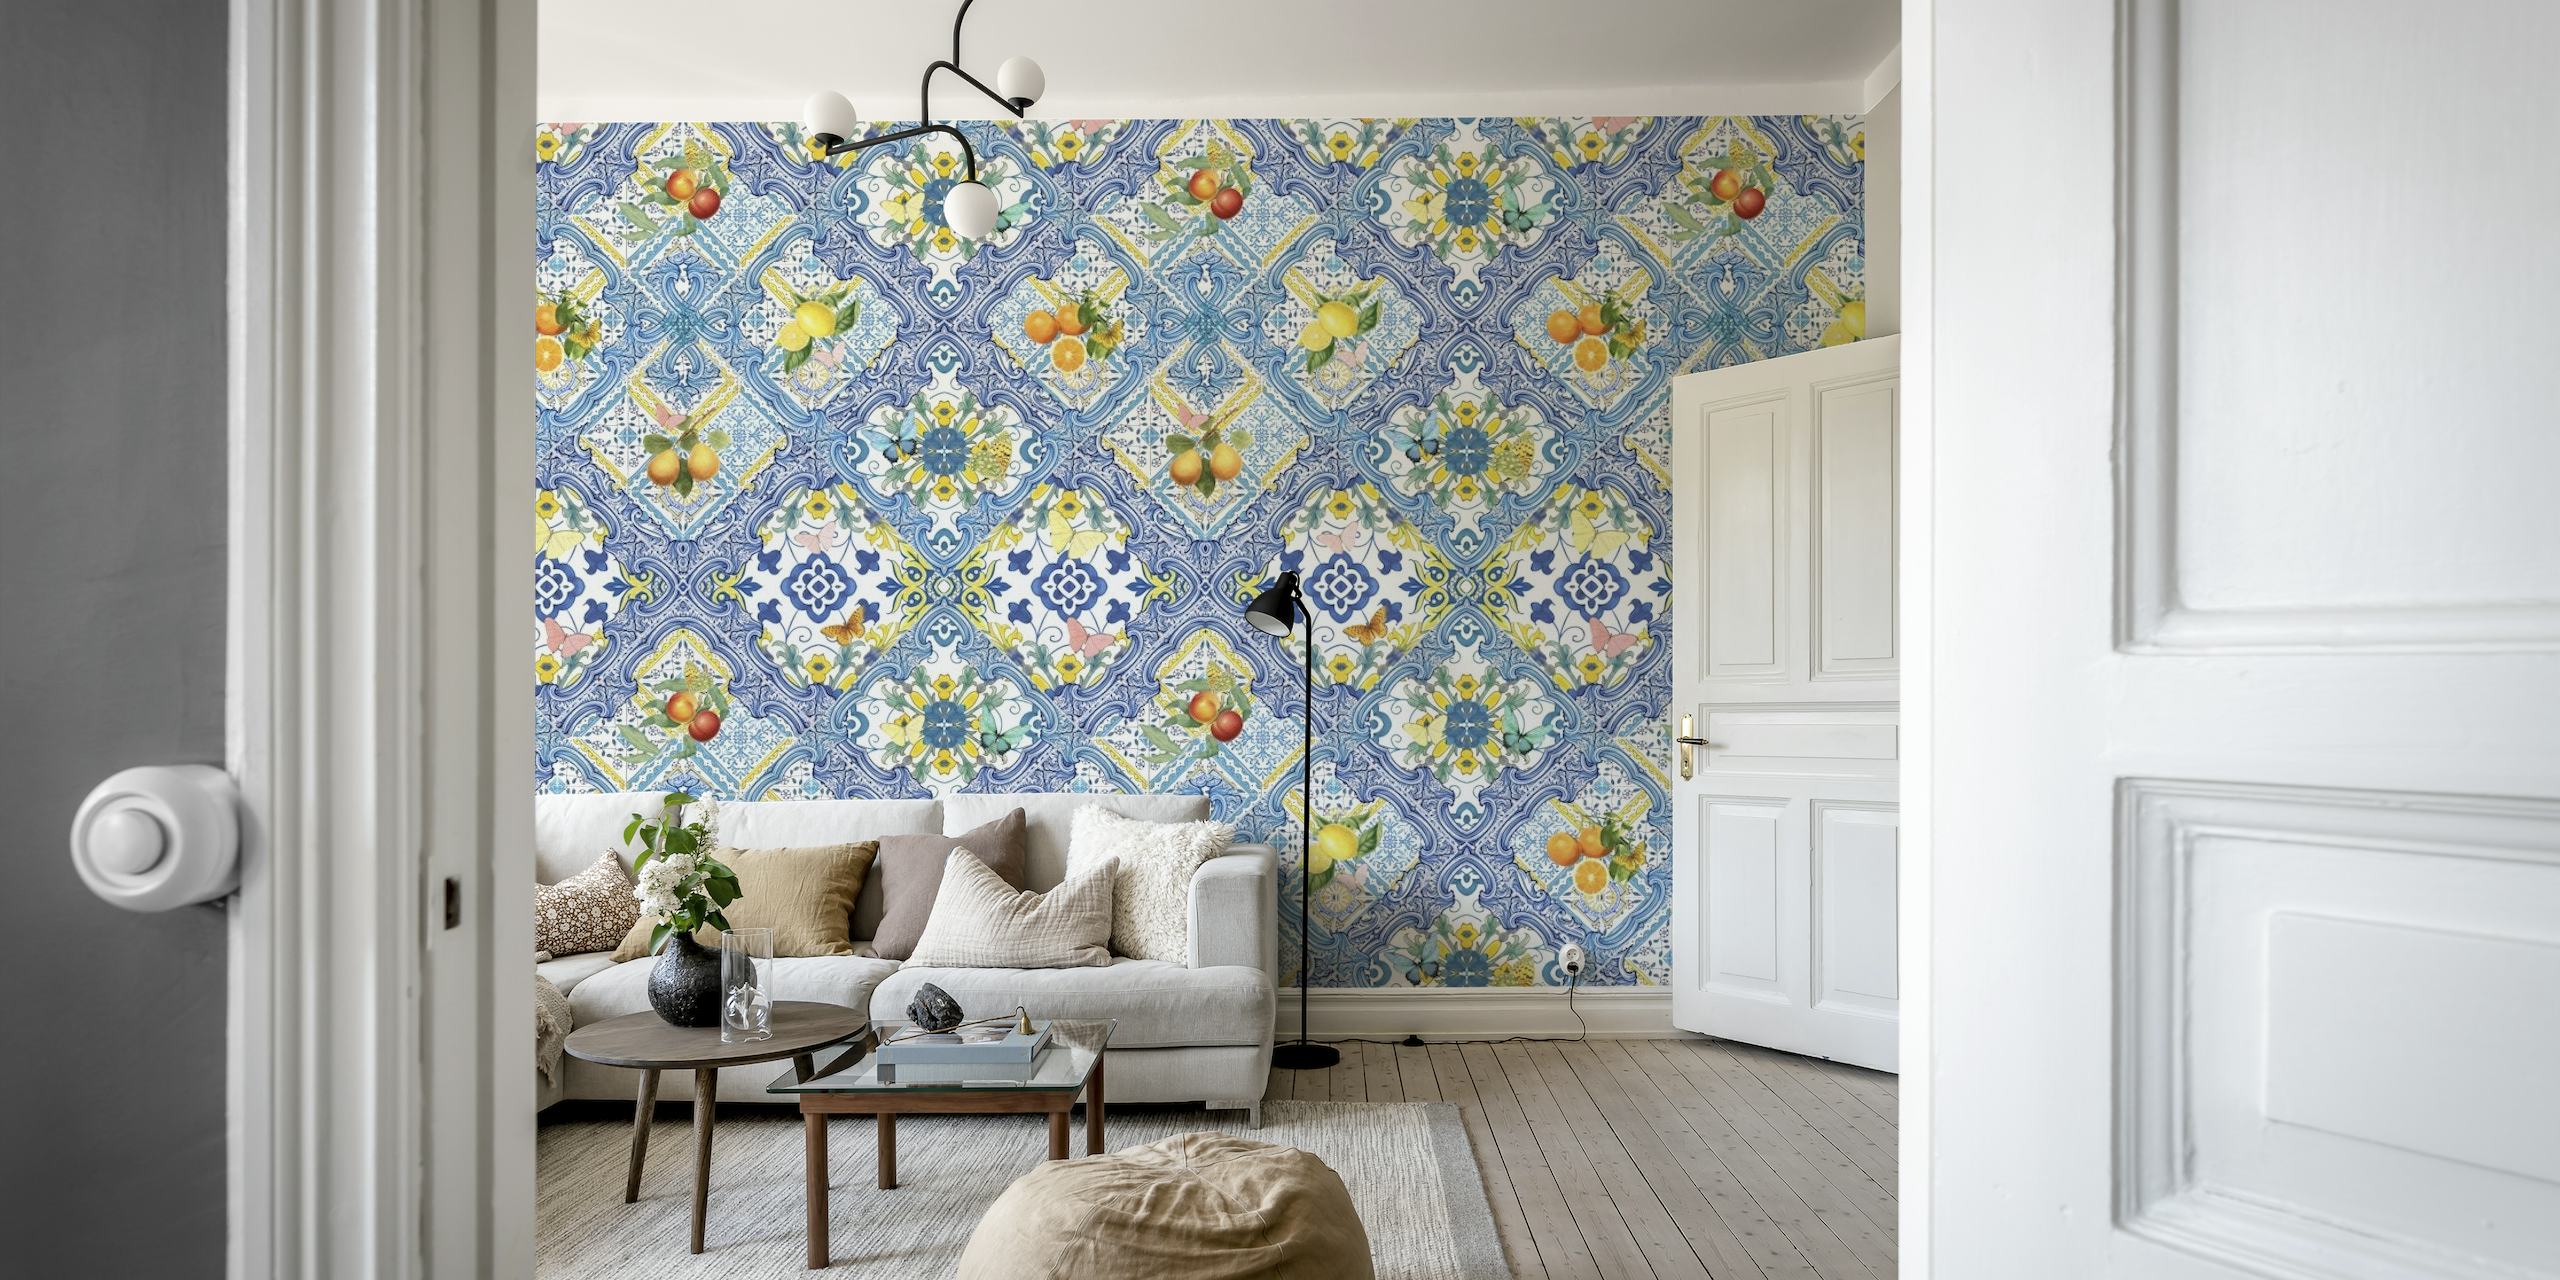 Mediterranean tiles and citrus fruit papel de parede